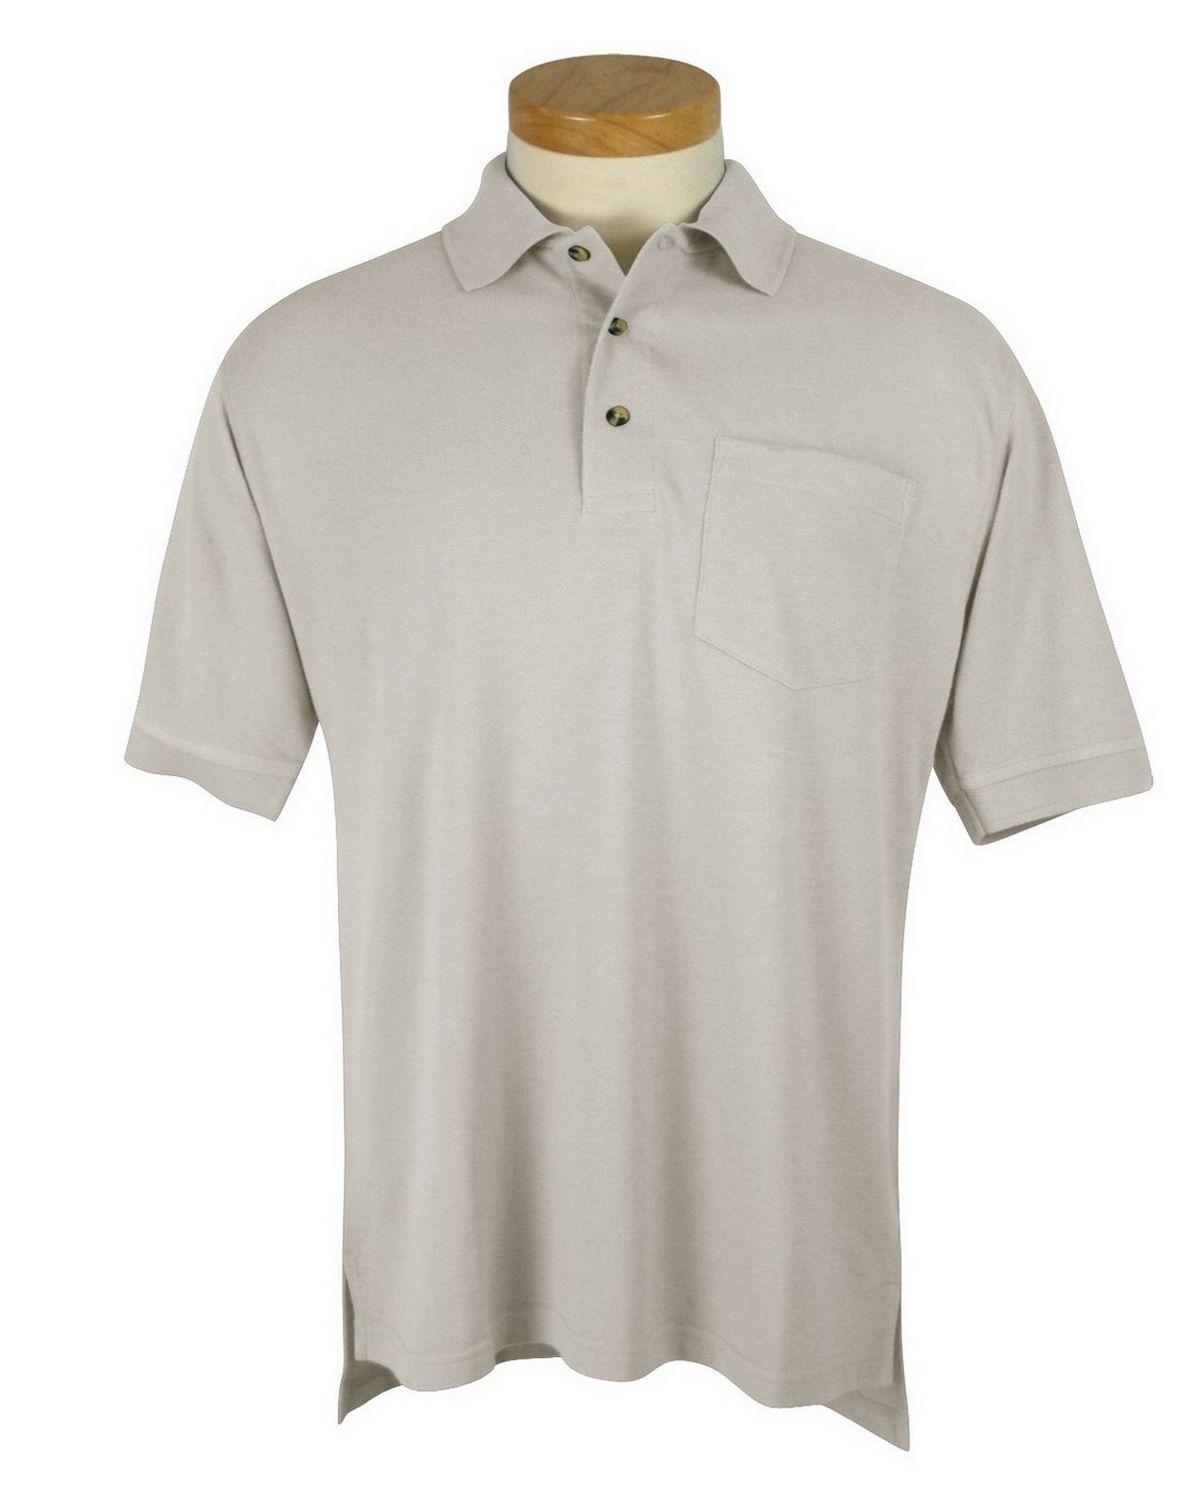 Tri-Mountain 106 Men's pique pocketed golf shirt - Apparelnbags.com